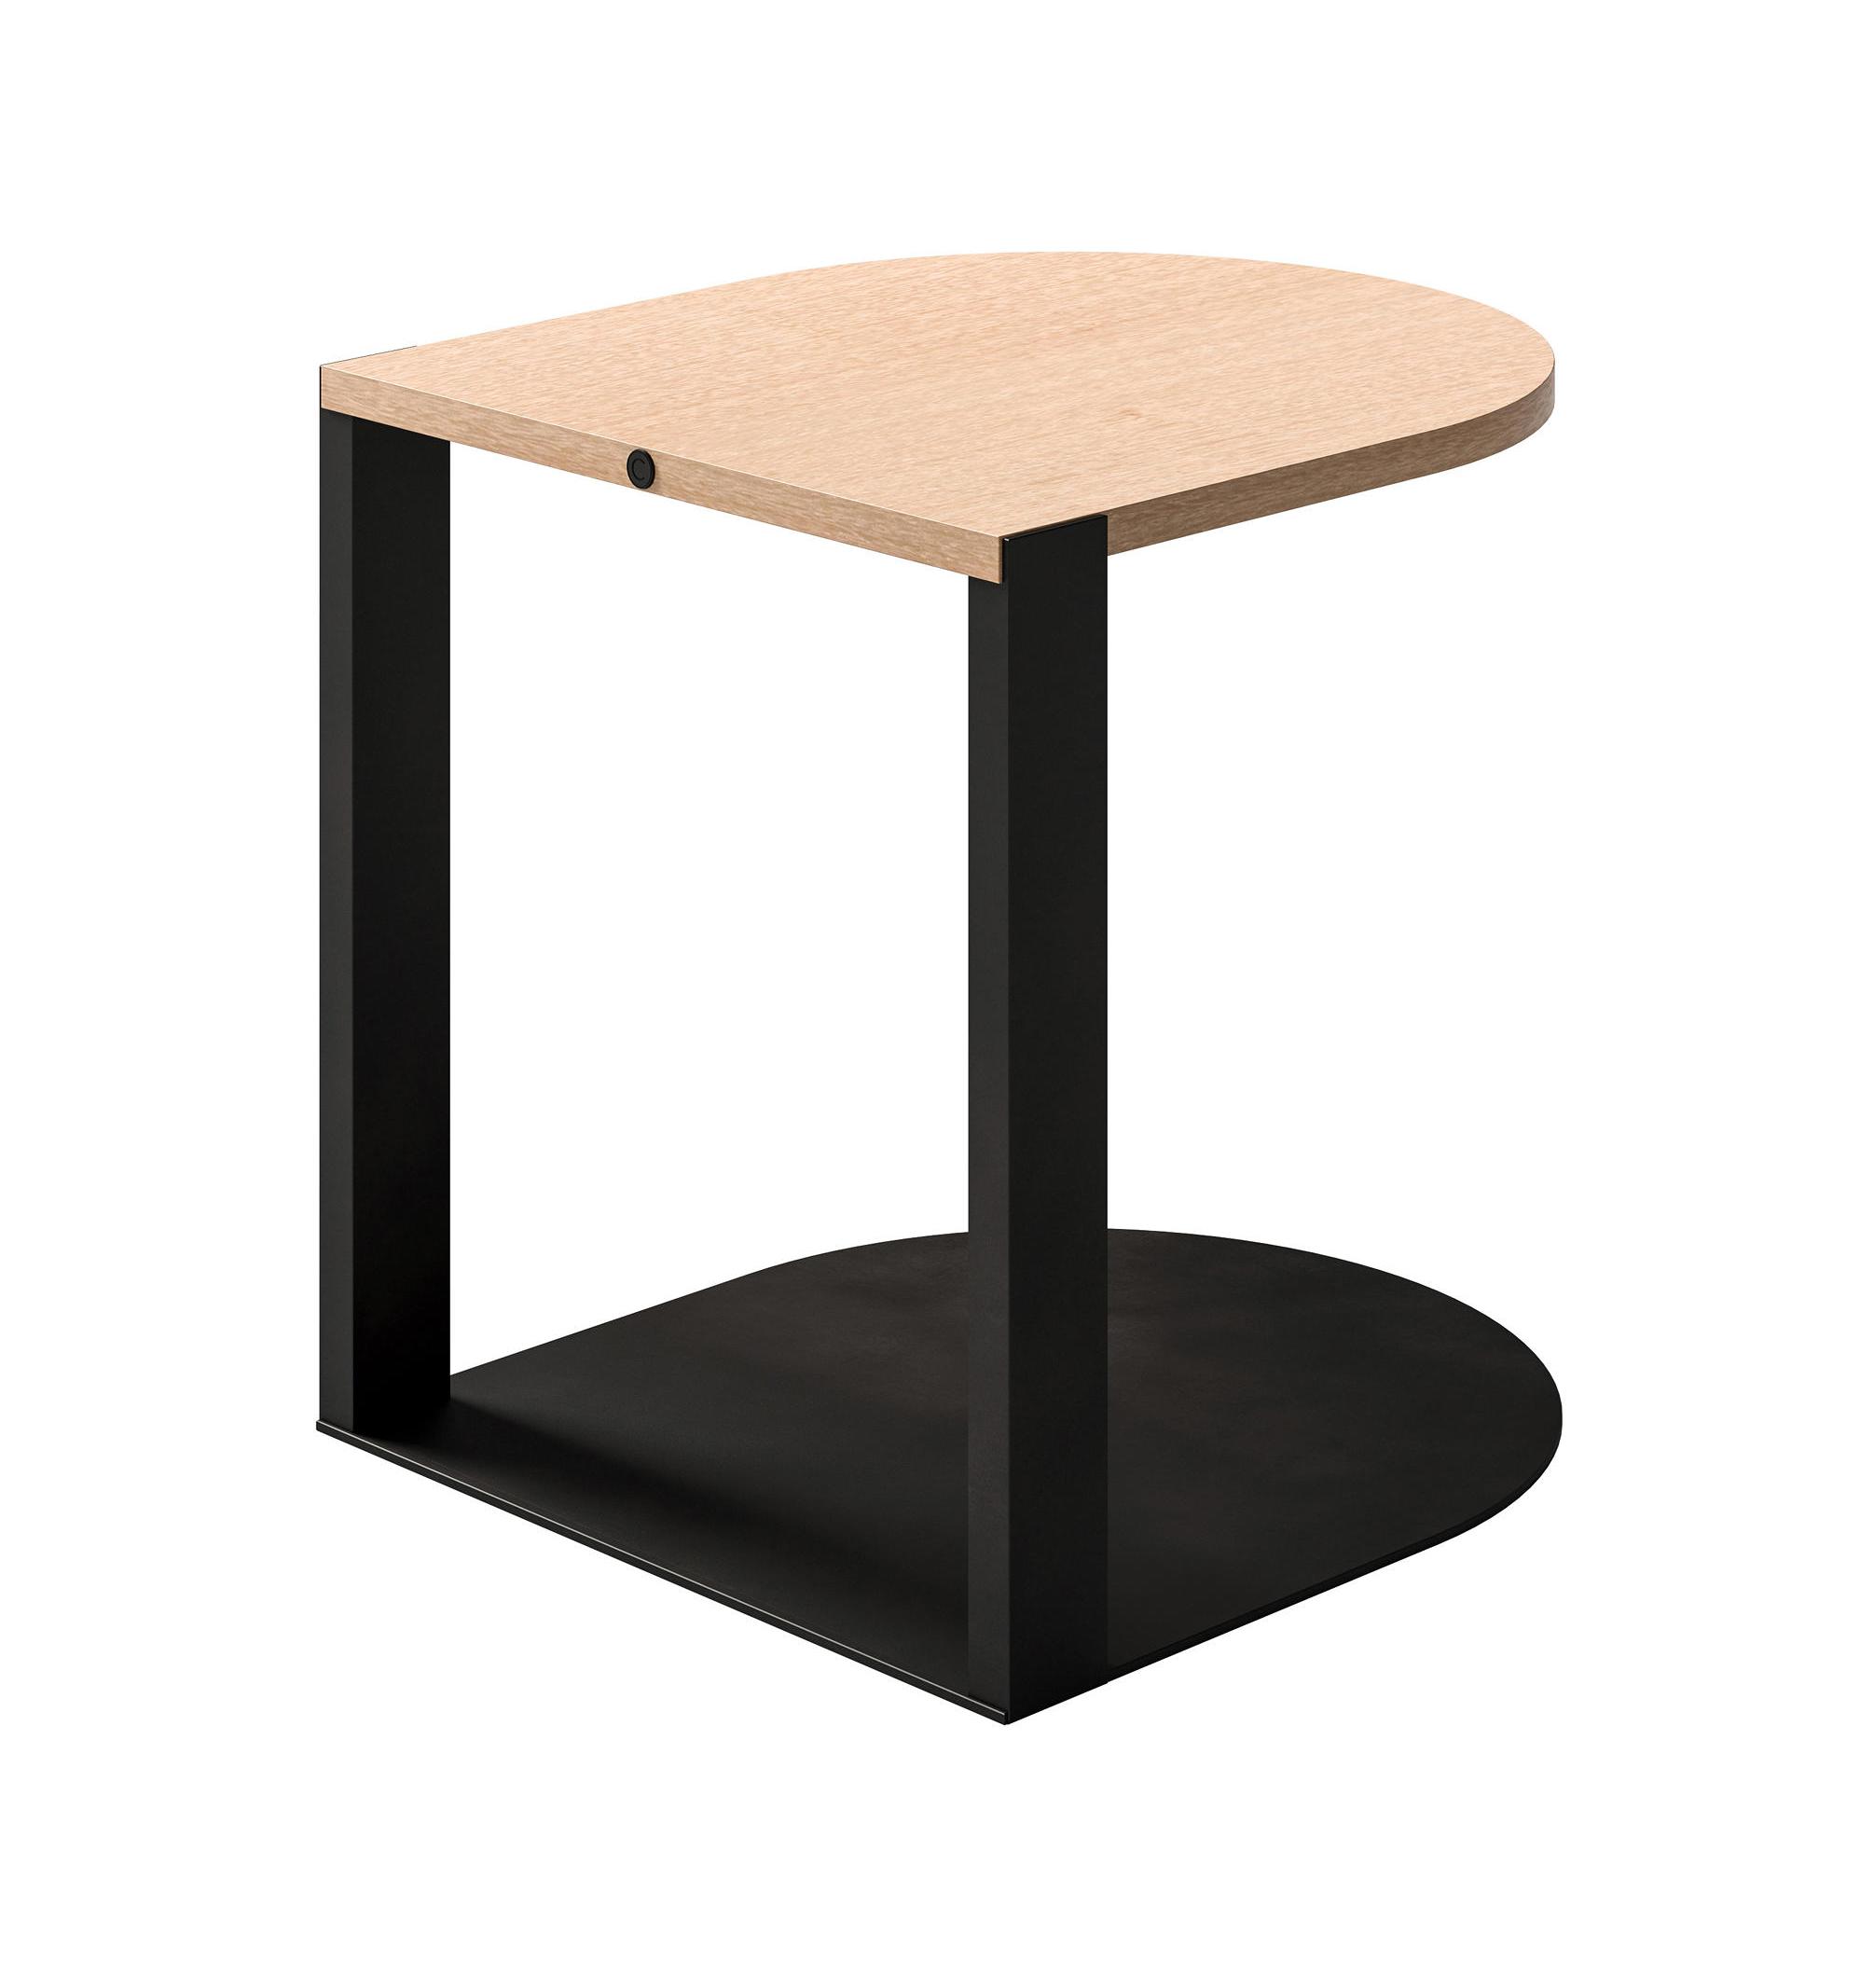 Minimalist Design Side Table